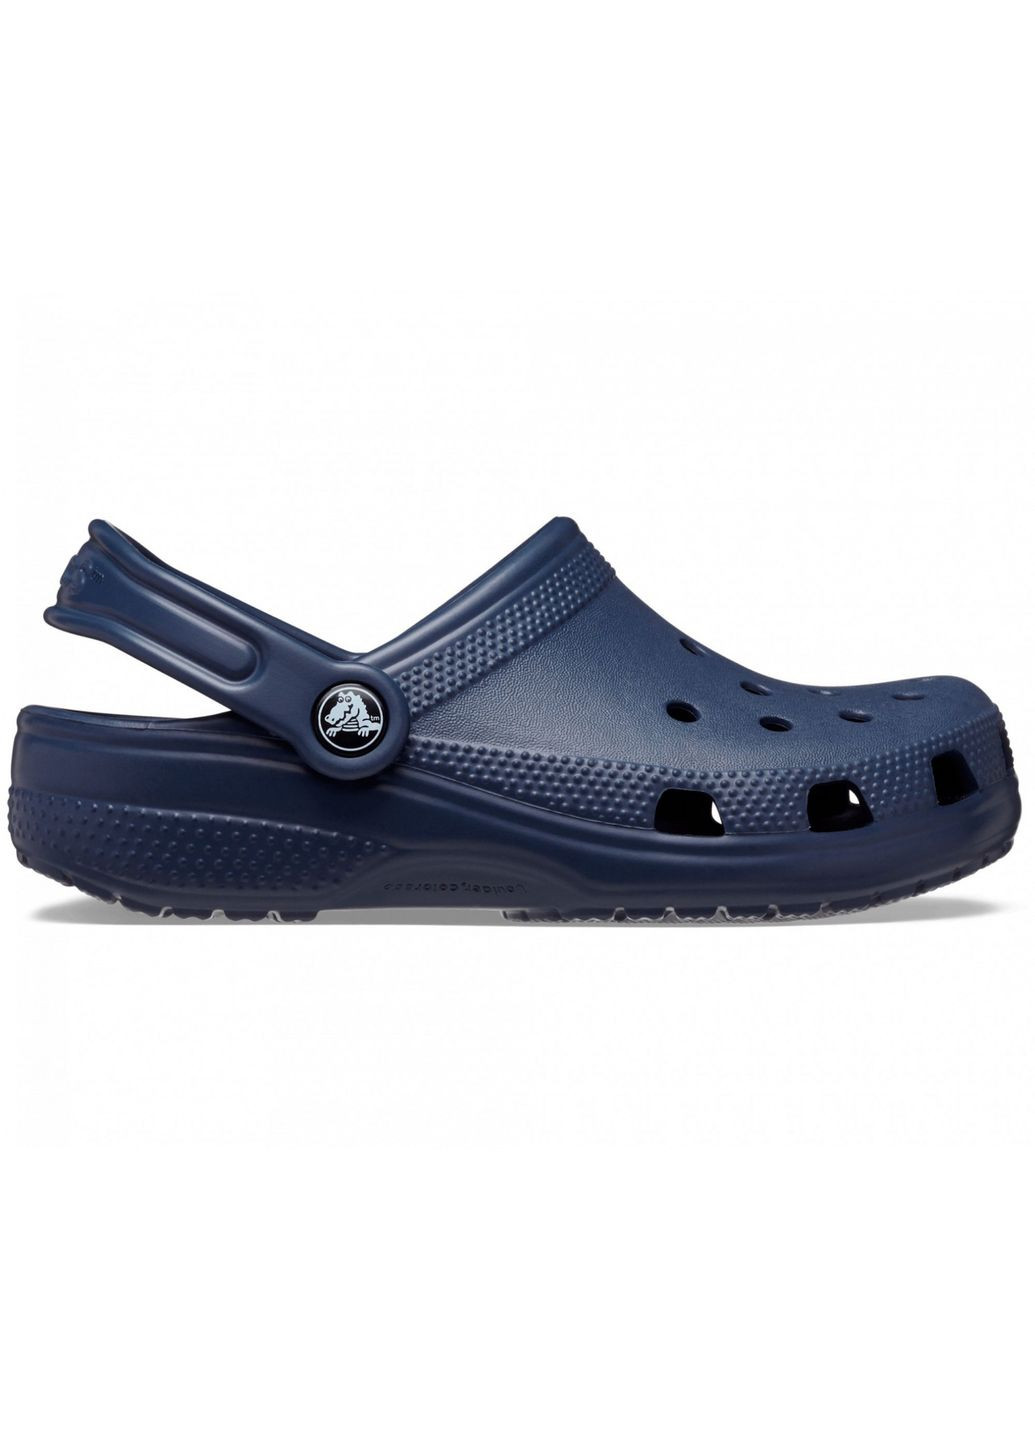 Синие сабо kids classic clog navy c8\25\15.5 см 206991 Crocs